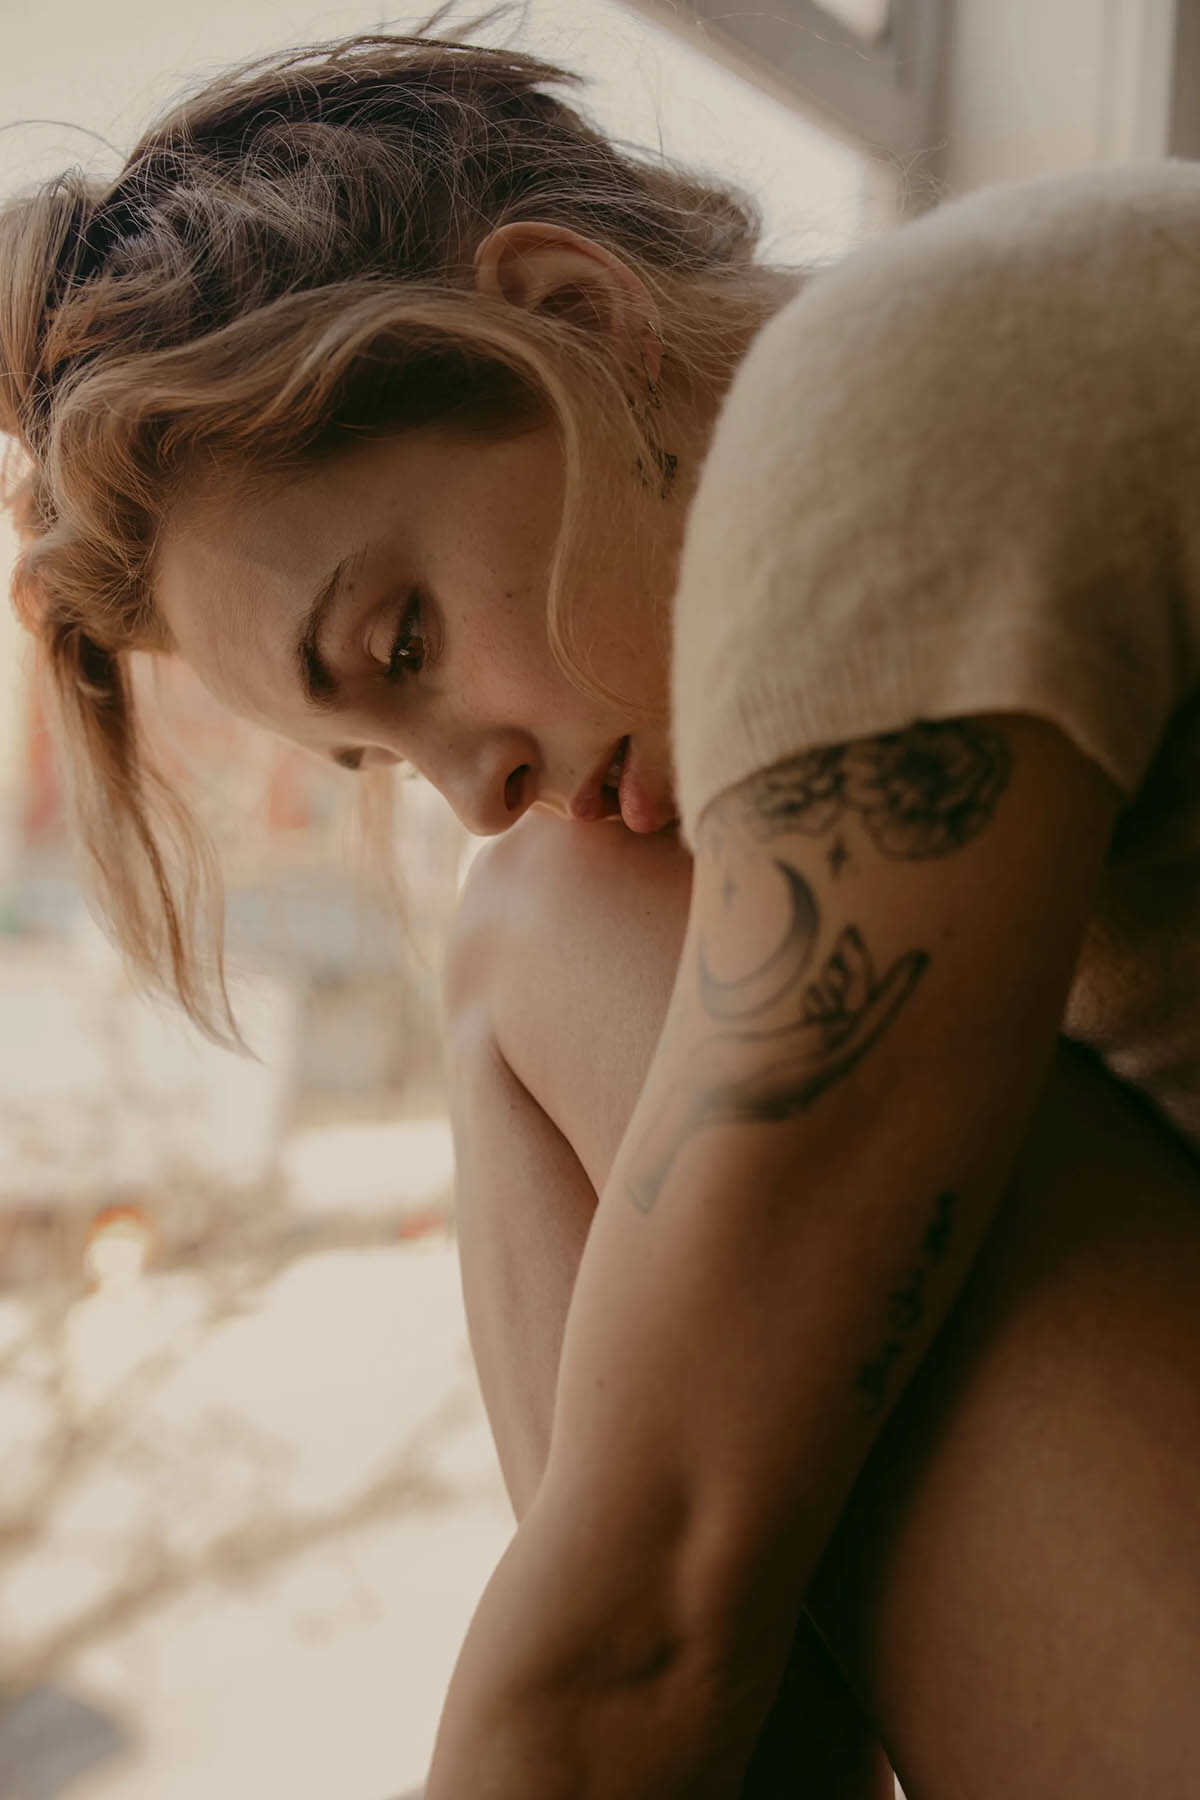  Σέξι topless φωτογραφίες της Brynn Sweetrain